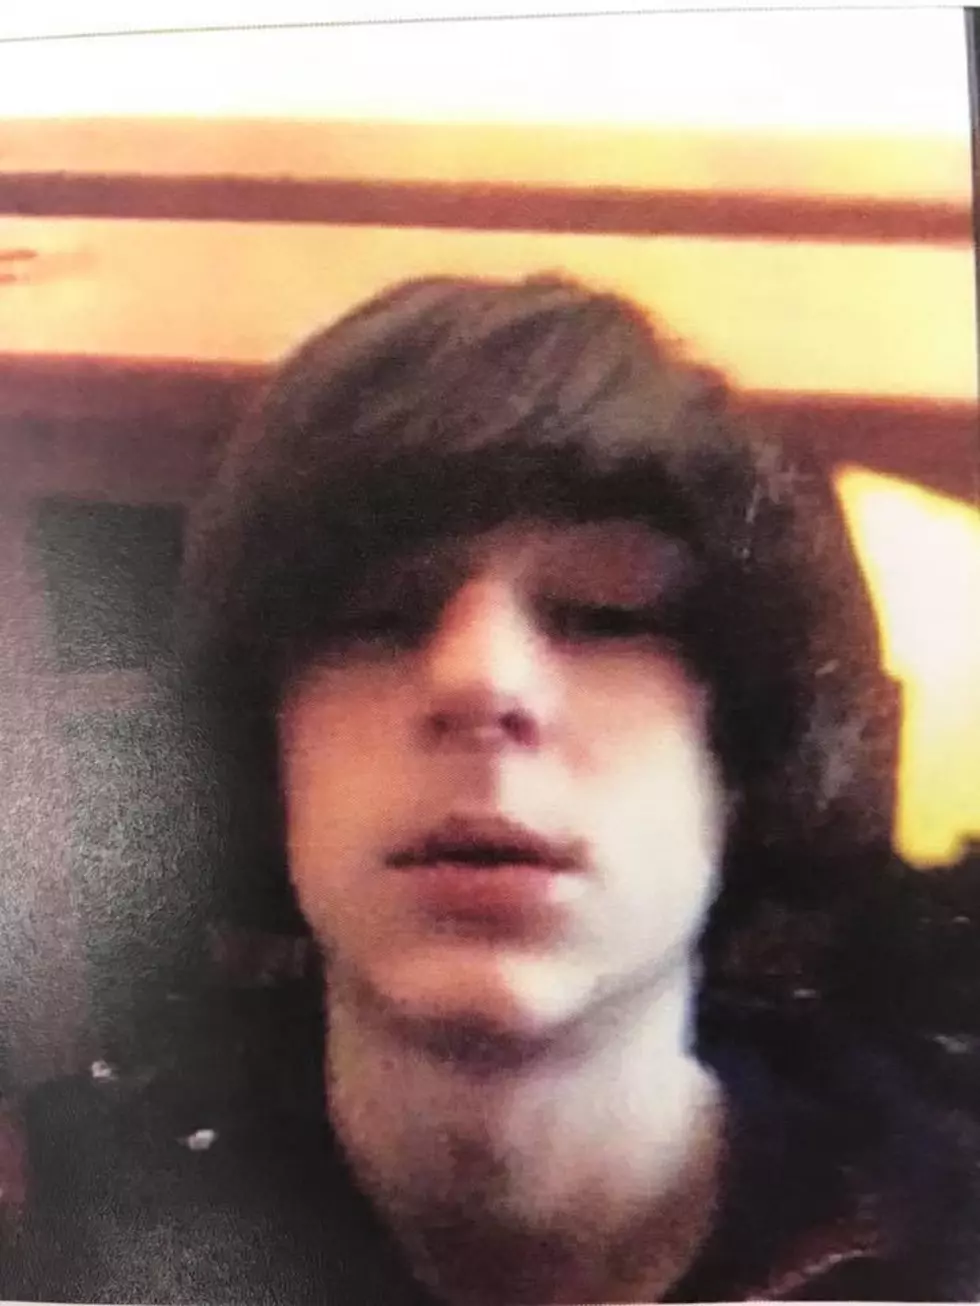 UPDATE: Missing Waretown Teenager Has Been Found